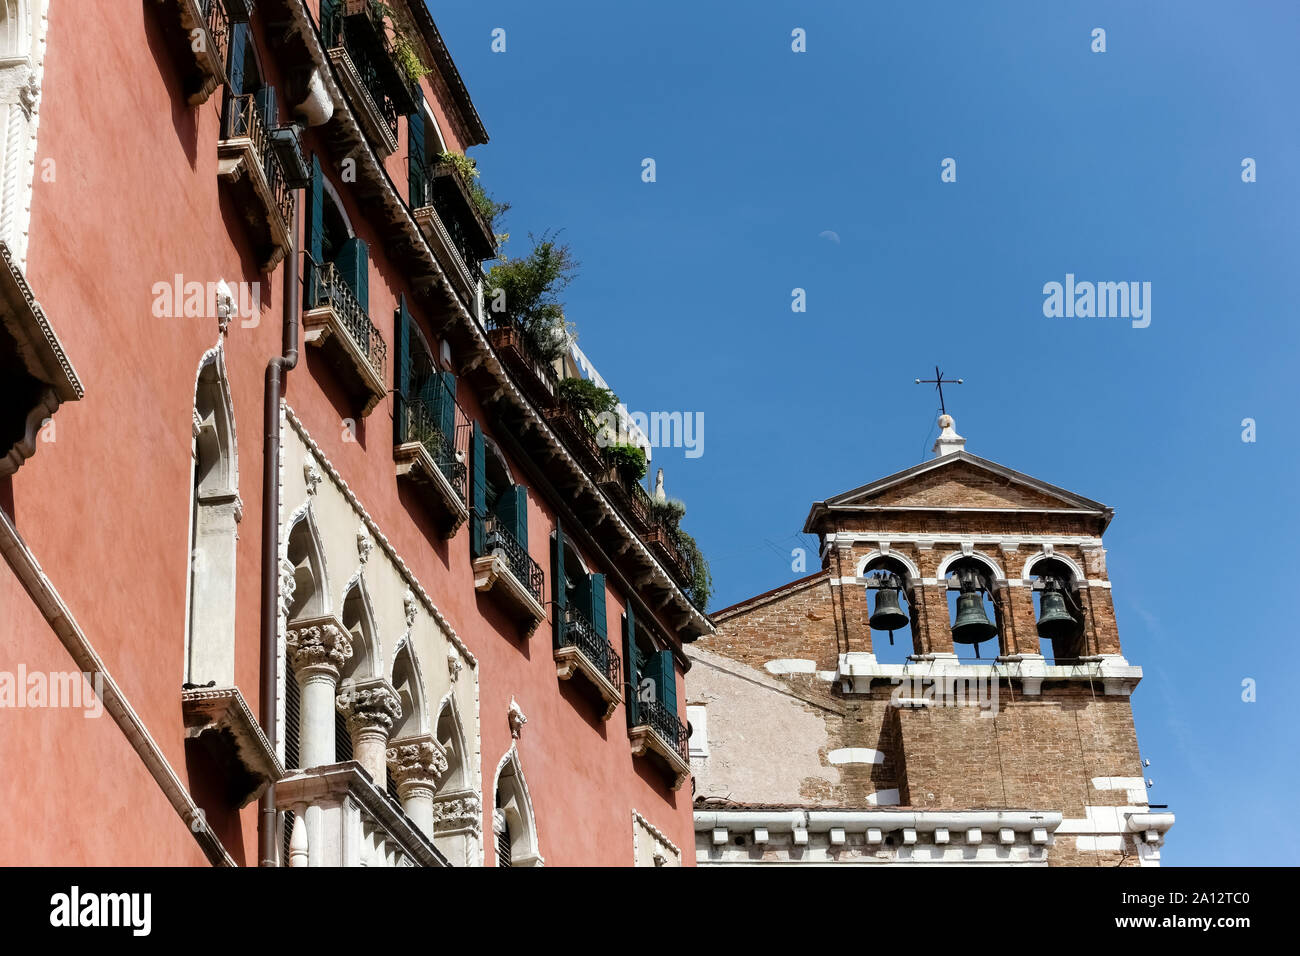 Campanile di Santa Maria del Giglio conosciuto anche come Santa Maria Zobenigo. Chiesa di Venezia. Italia, Europa, UE. Foto Stock